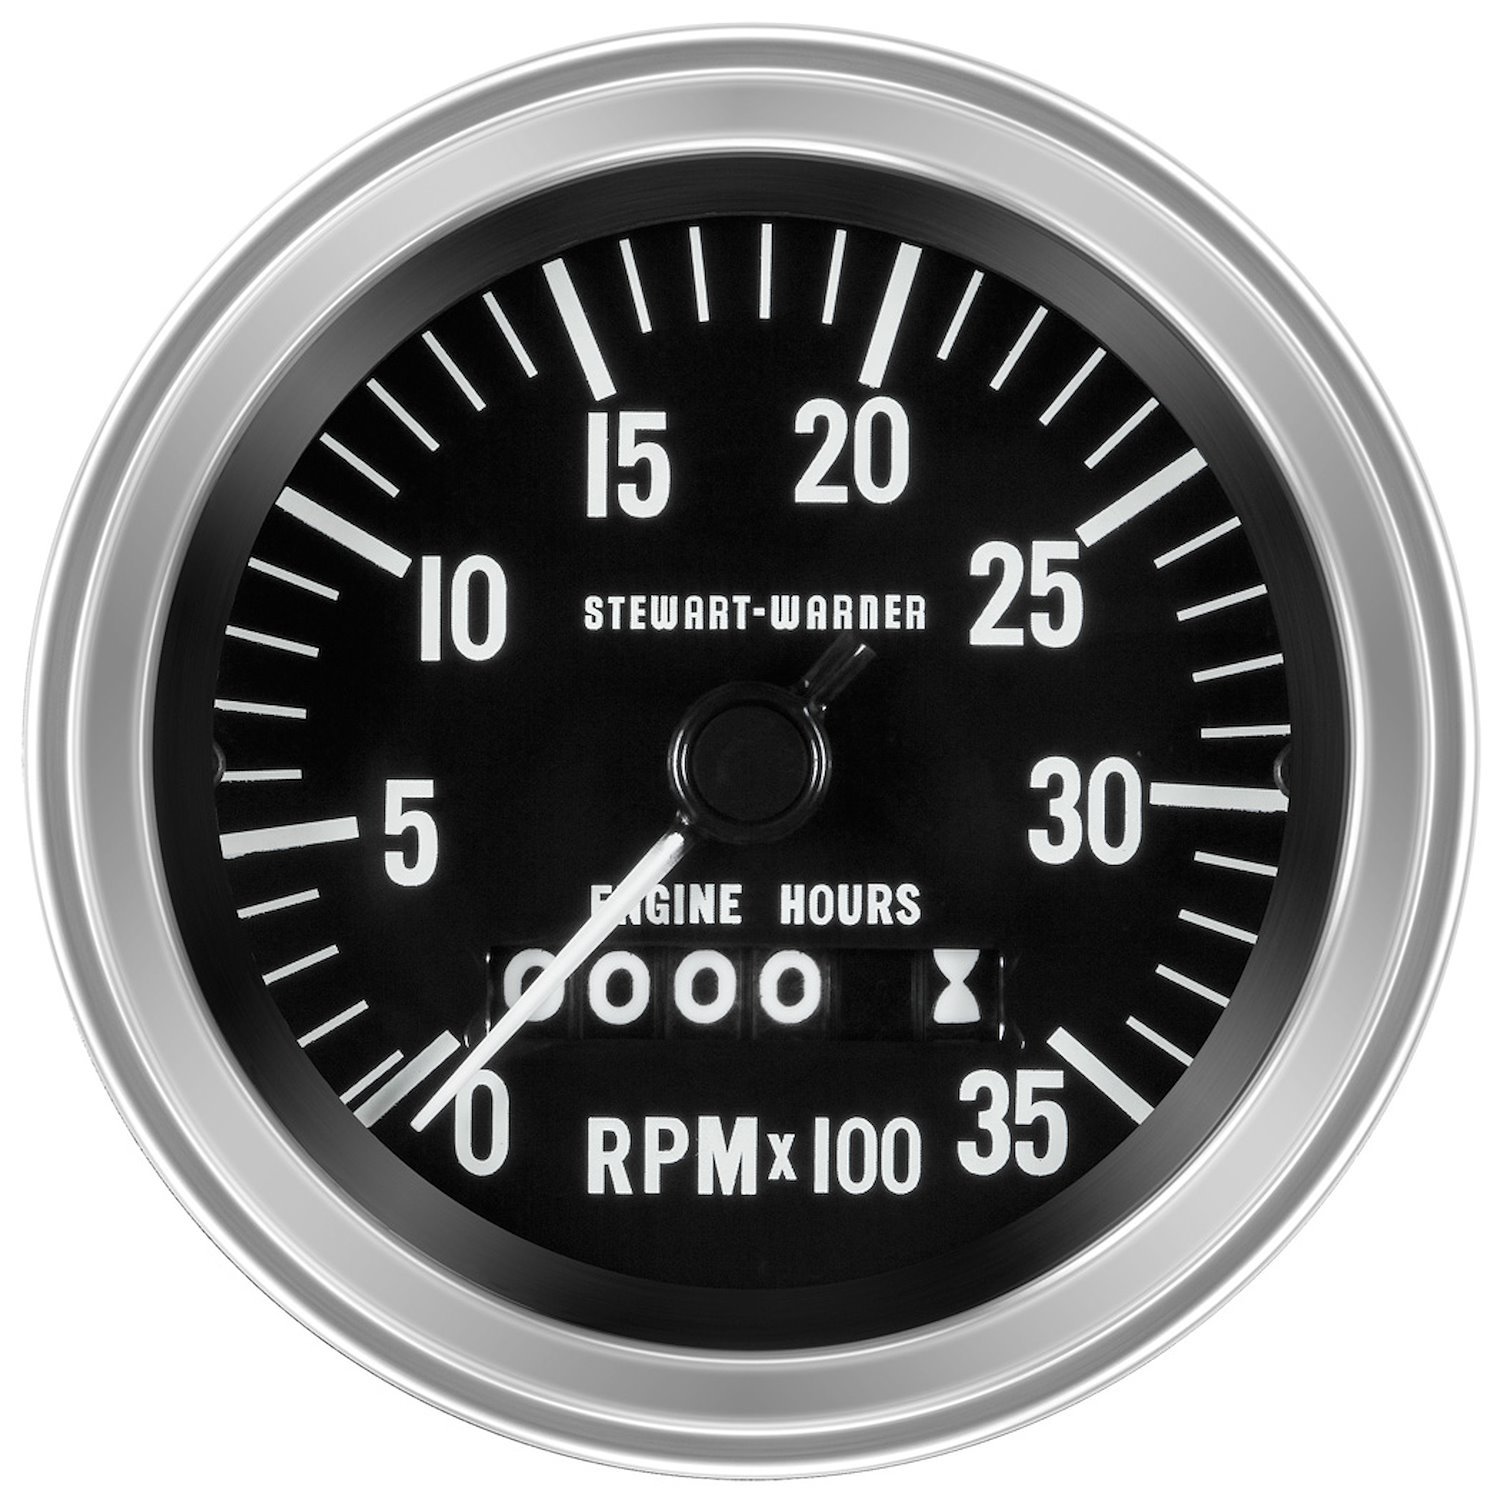 Deluxe-Series Tachometer Gauge, 3-3/8 in. Diameter, Mechanical - Black Facedial